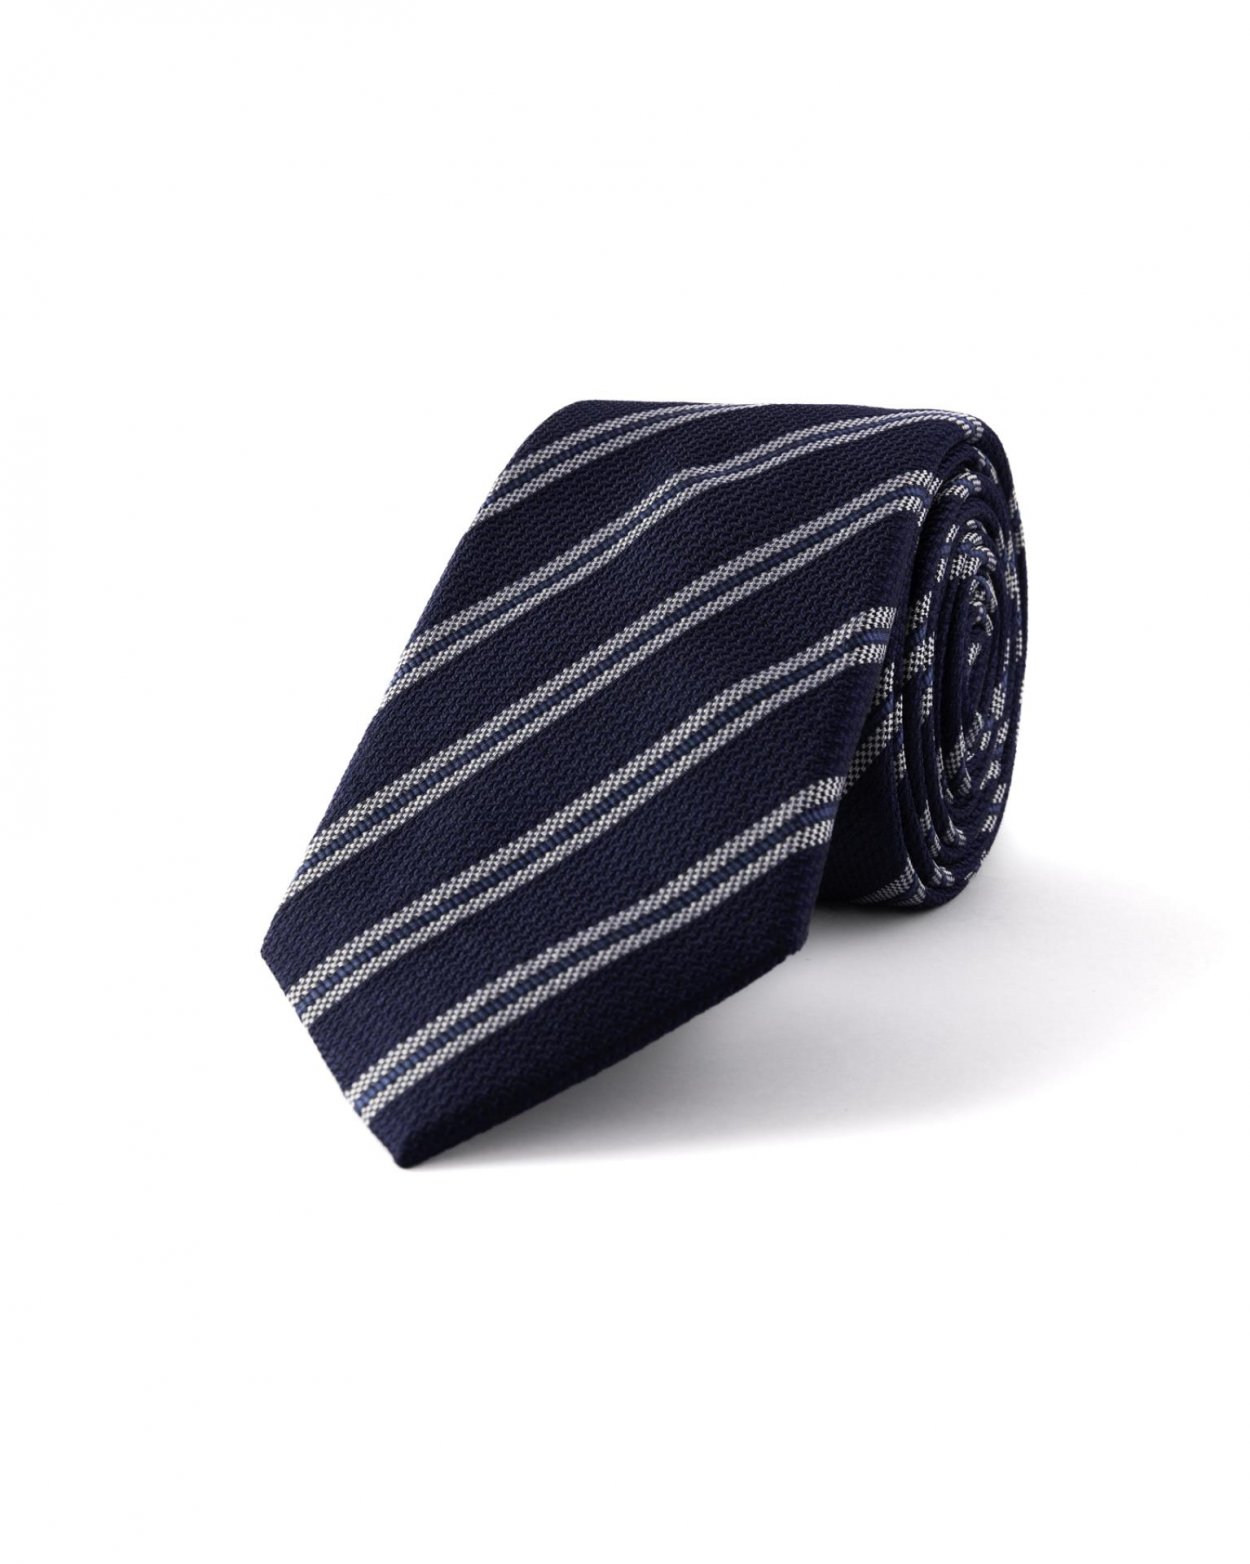 Tmavě modrá hedvábná kravata s proužkem